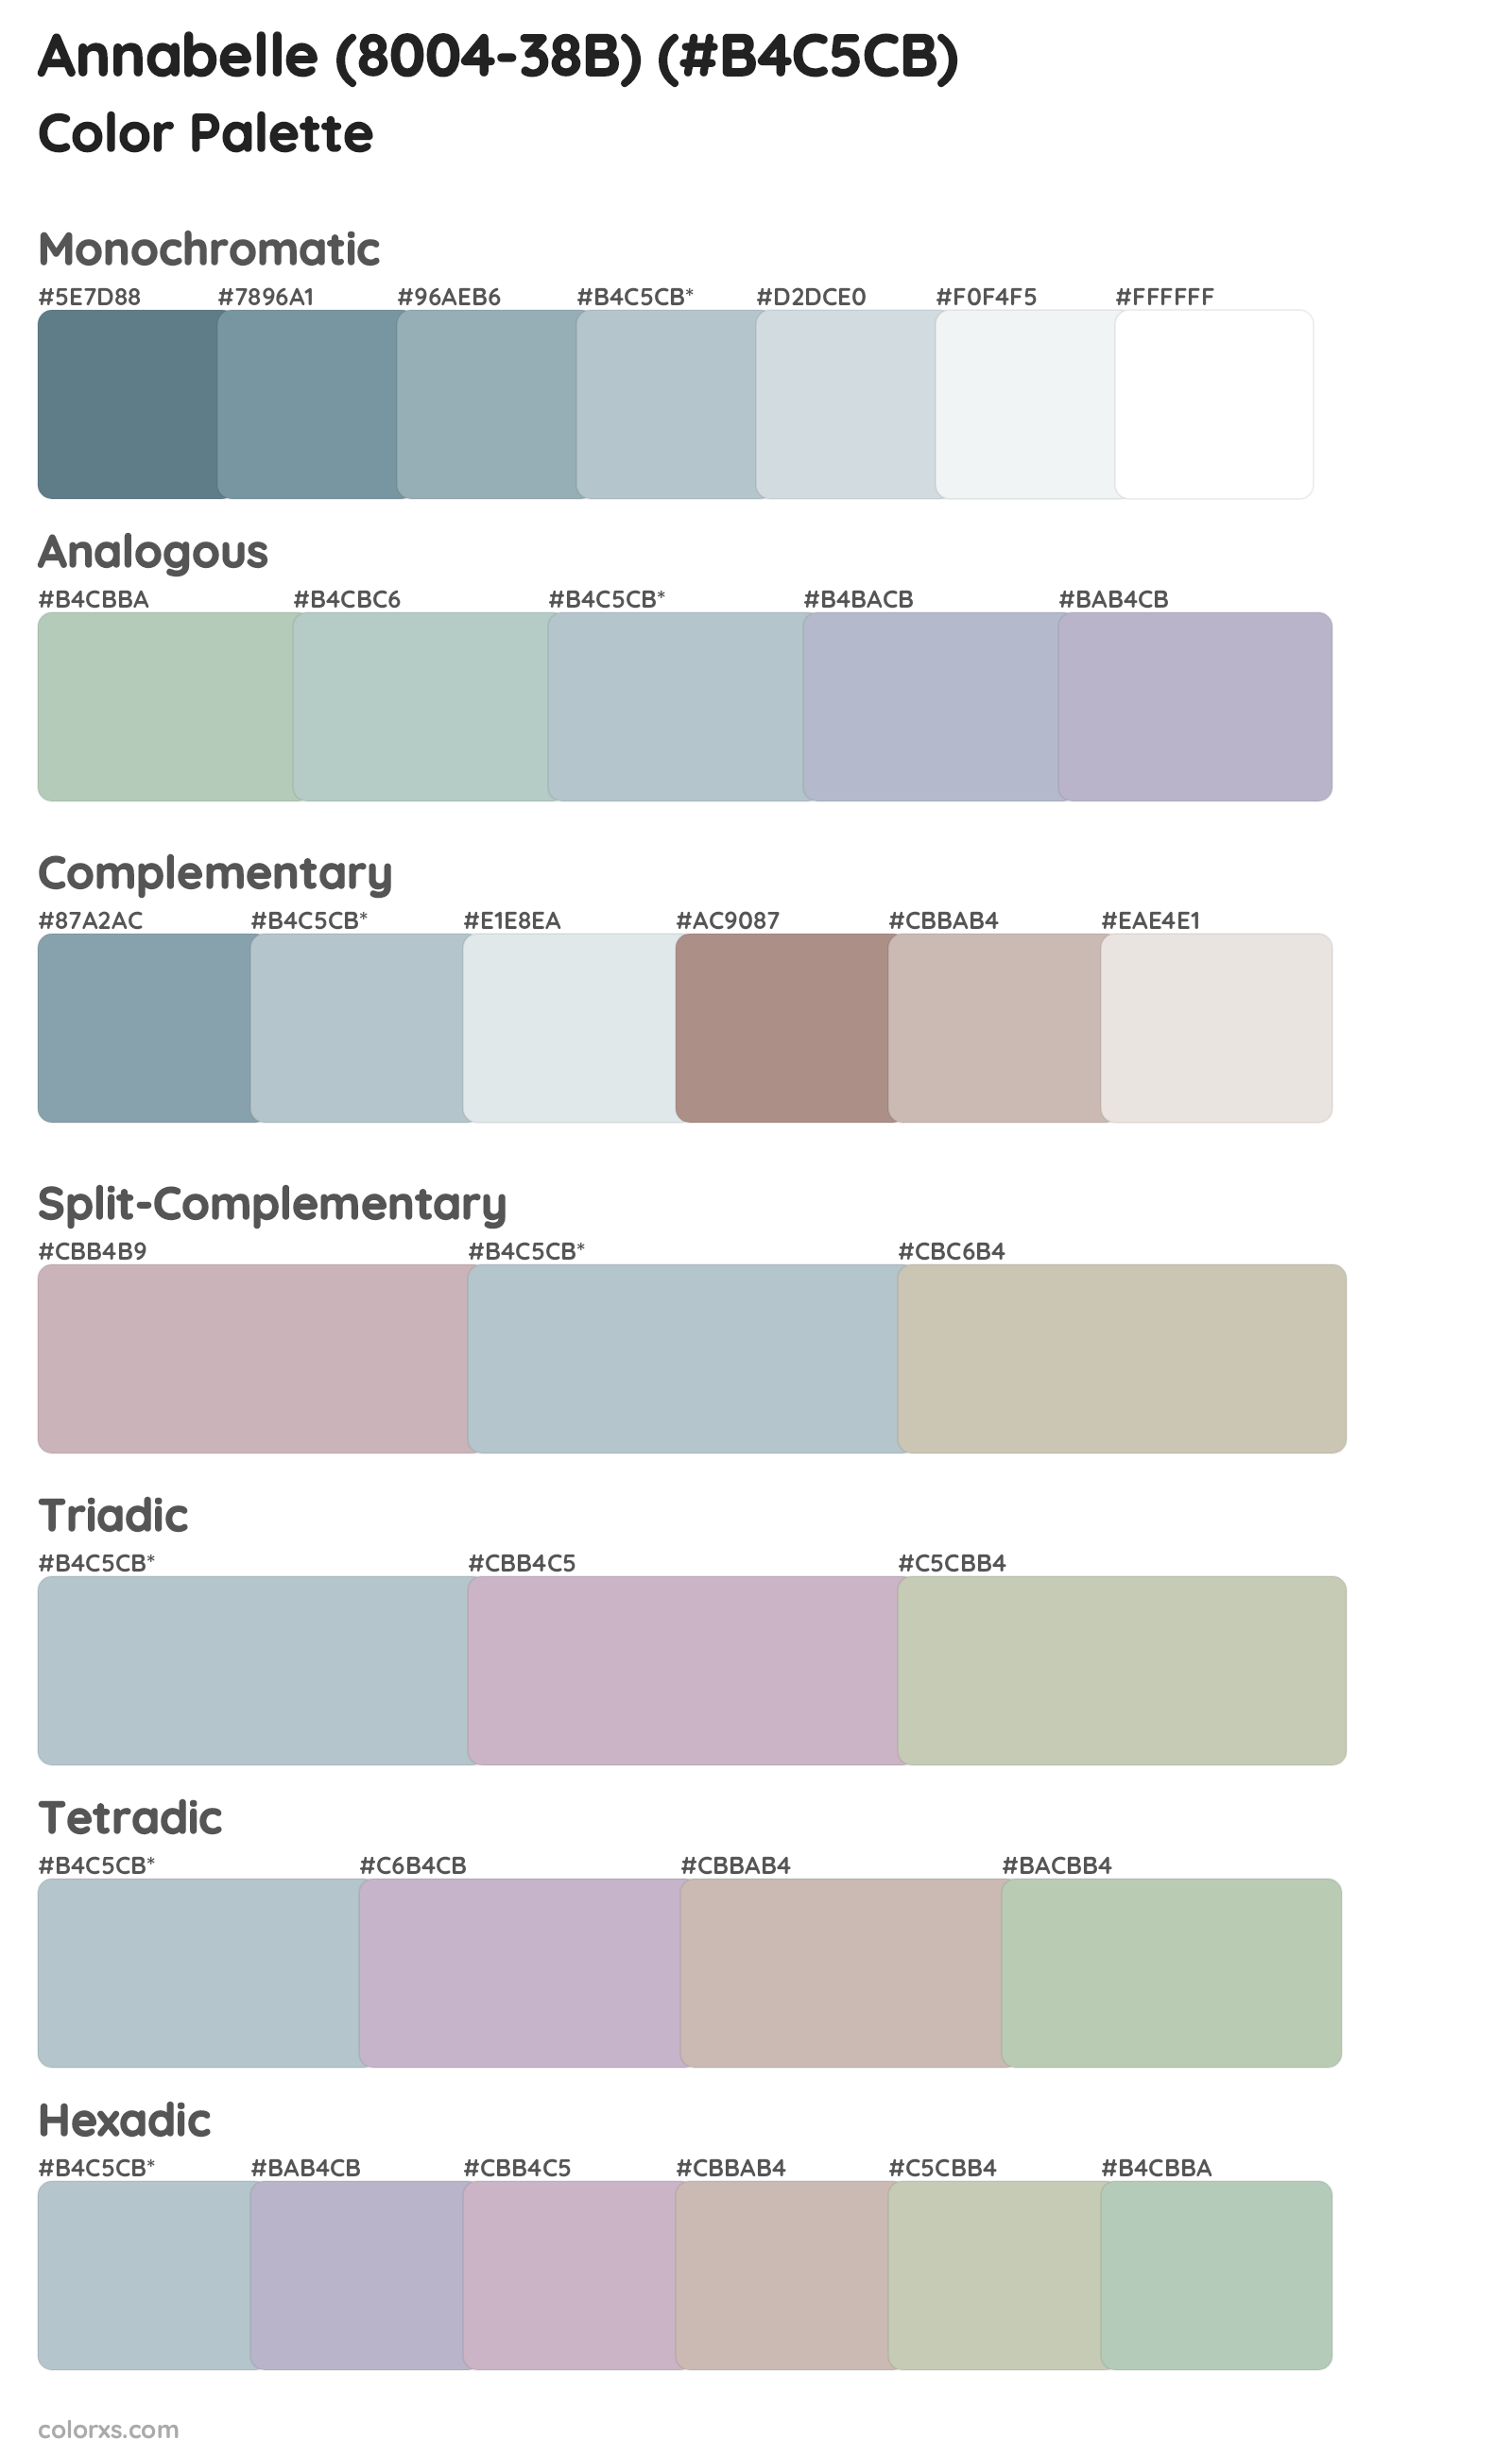 Annabelle (8004-38B) Color Scheme Palettes